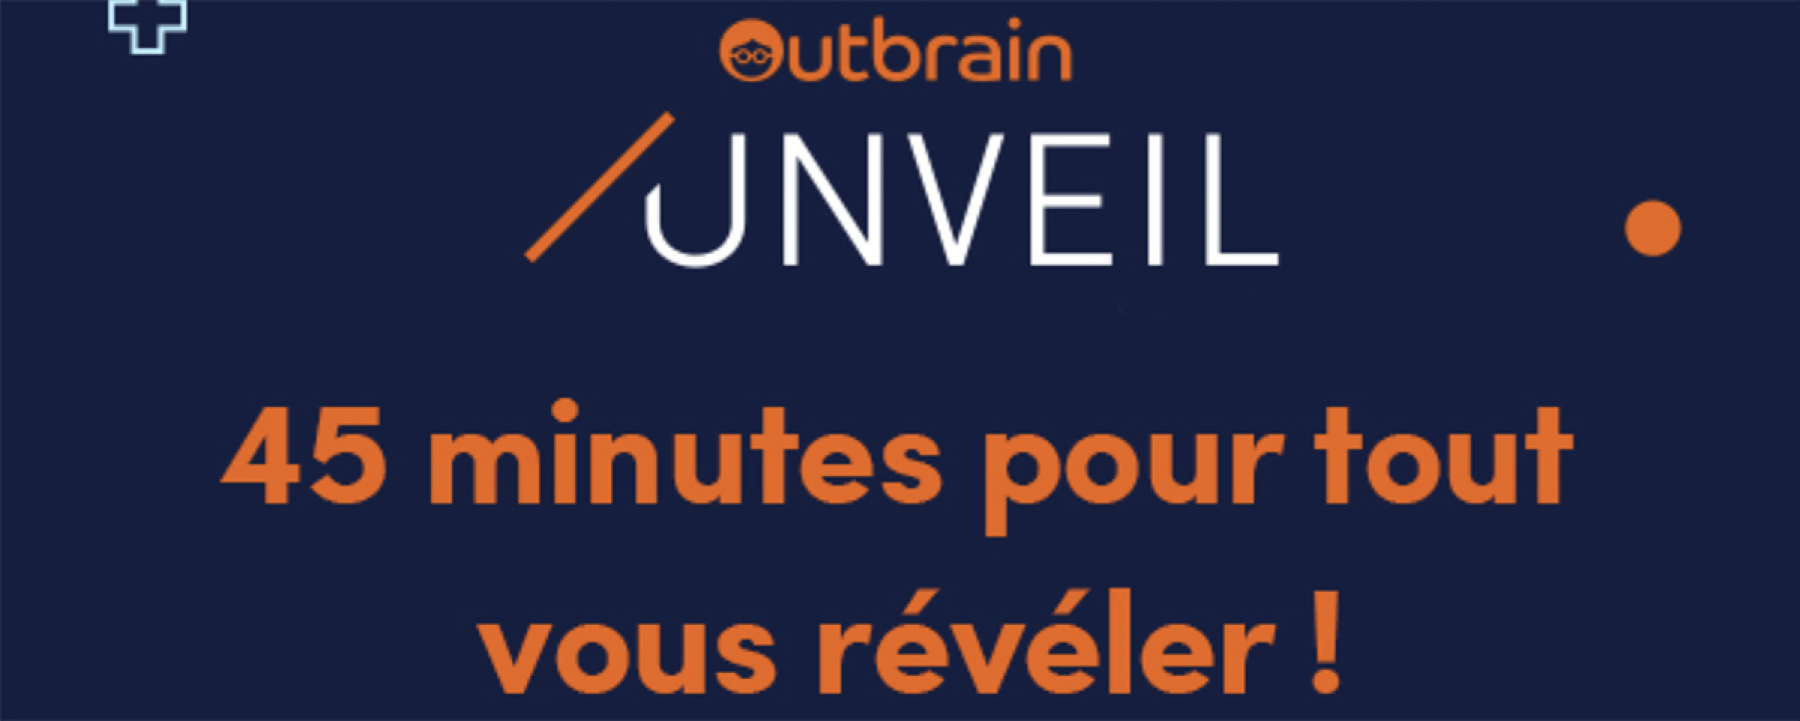 Outbrain Unveil, un événement en ligne organisé par Outbrain le 27 janvier 2021